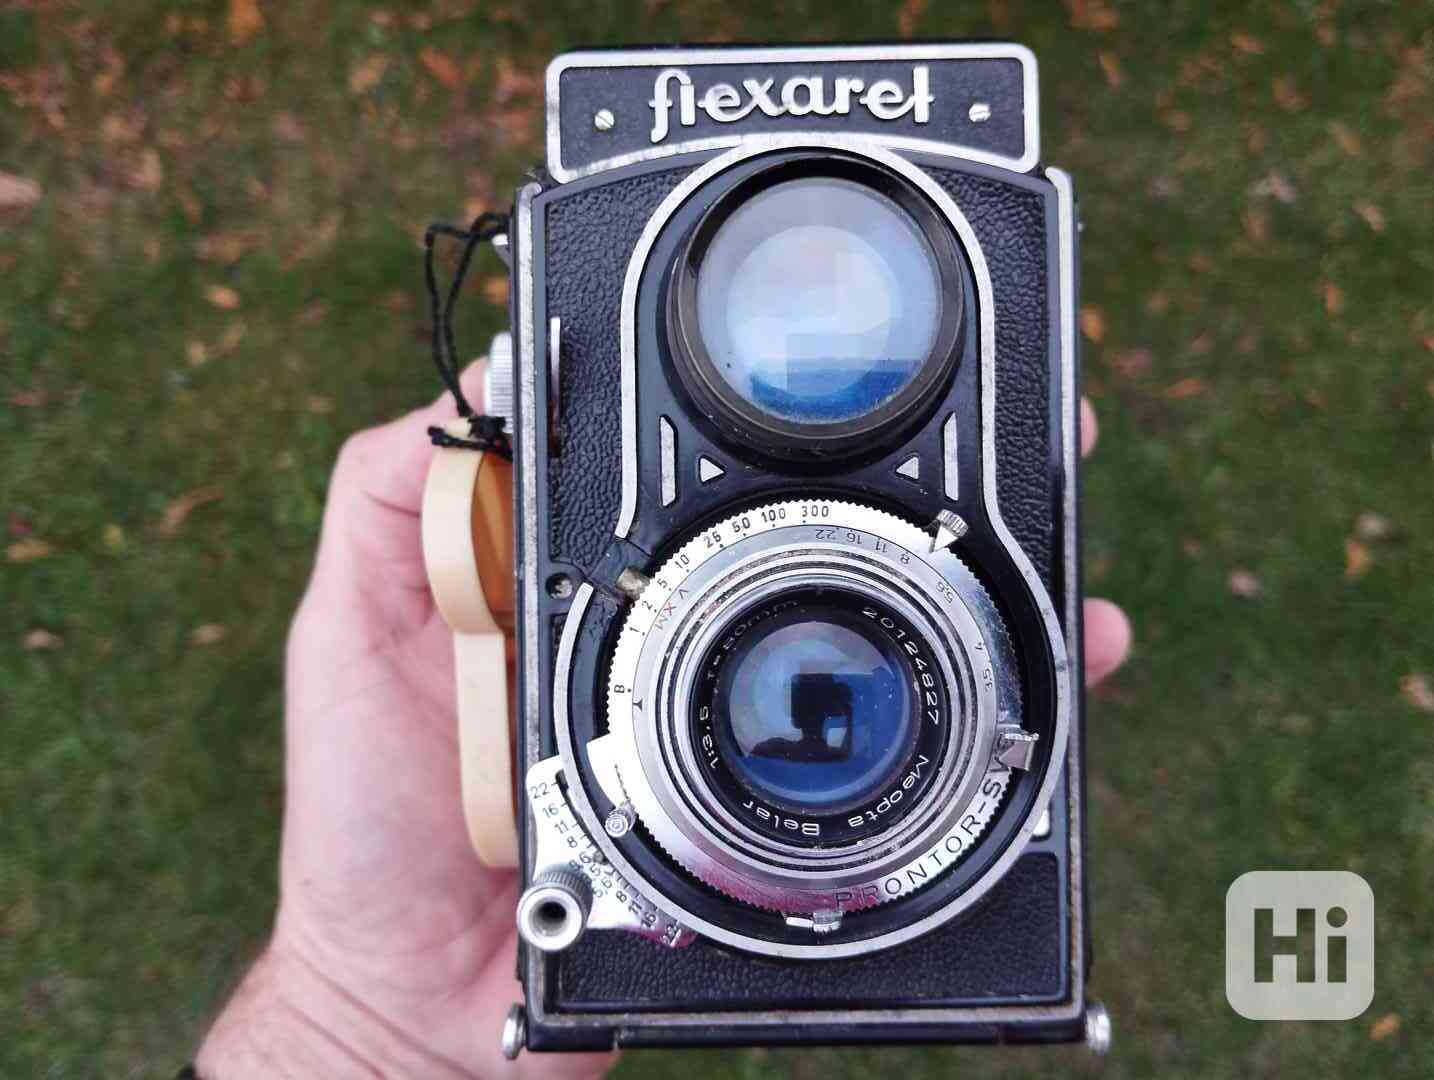 Starý fotoaparat FLEXARET - dekorace, do sbírky atp. - foto 1